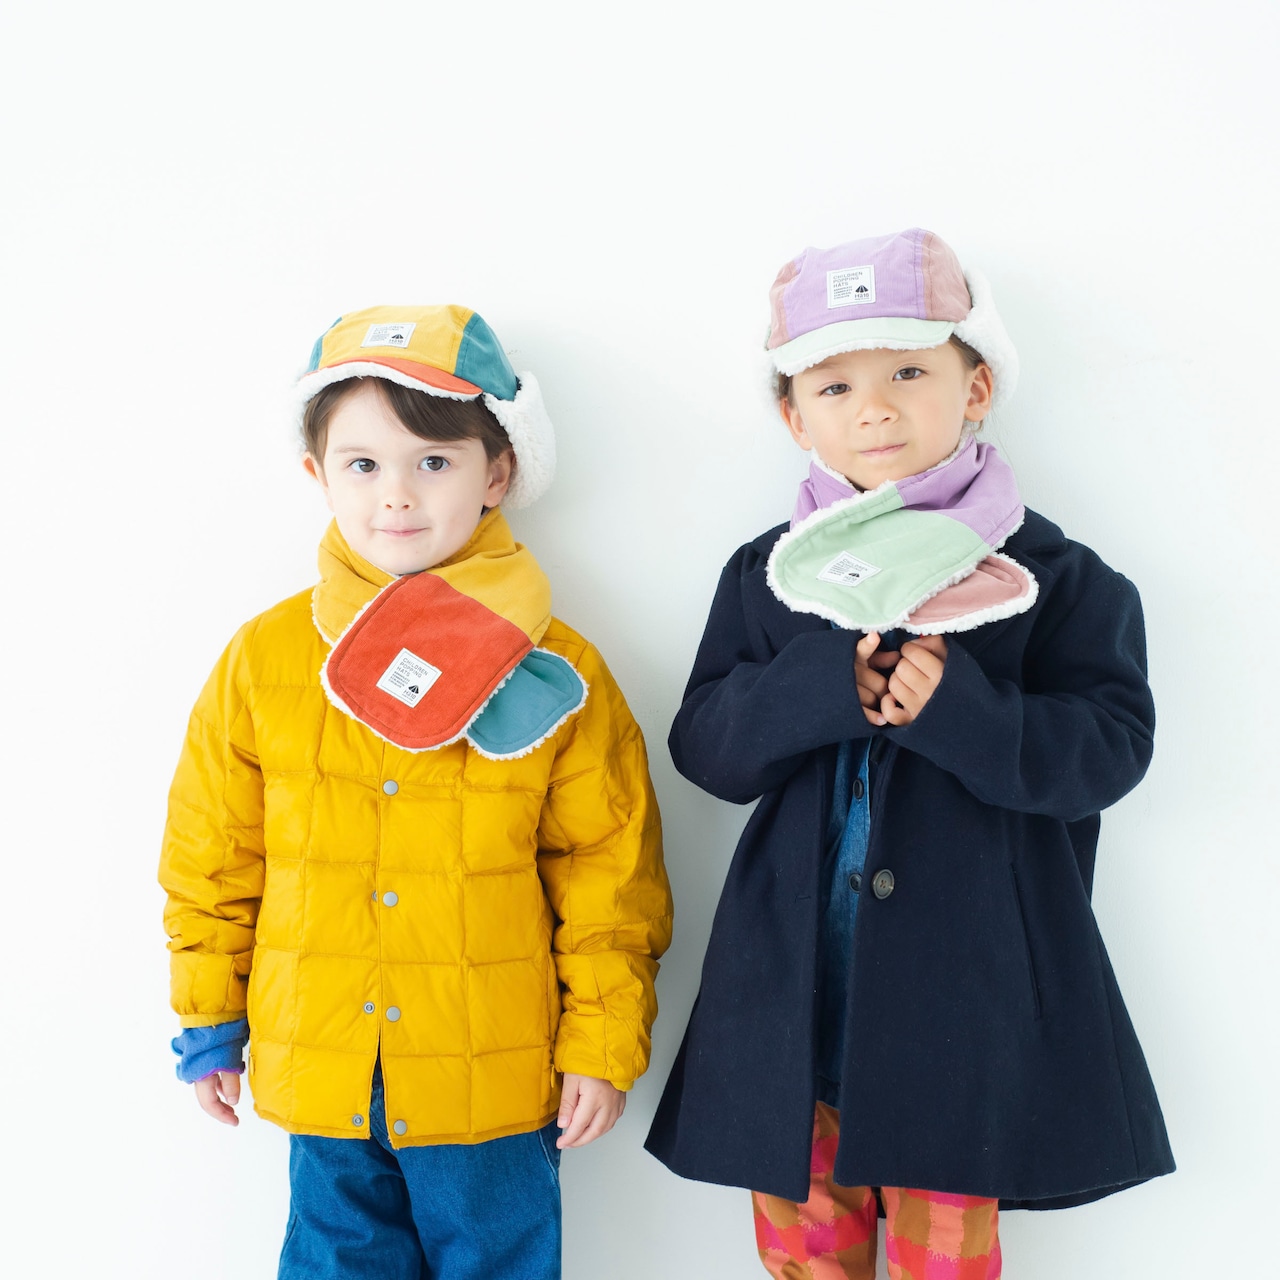 マフラー【マルチミントグリーン】ブランド 子供 帽子 男の子 女の子 男女兼用 日本製 冬 出産祝い キッズ ギフト